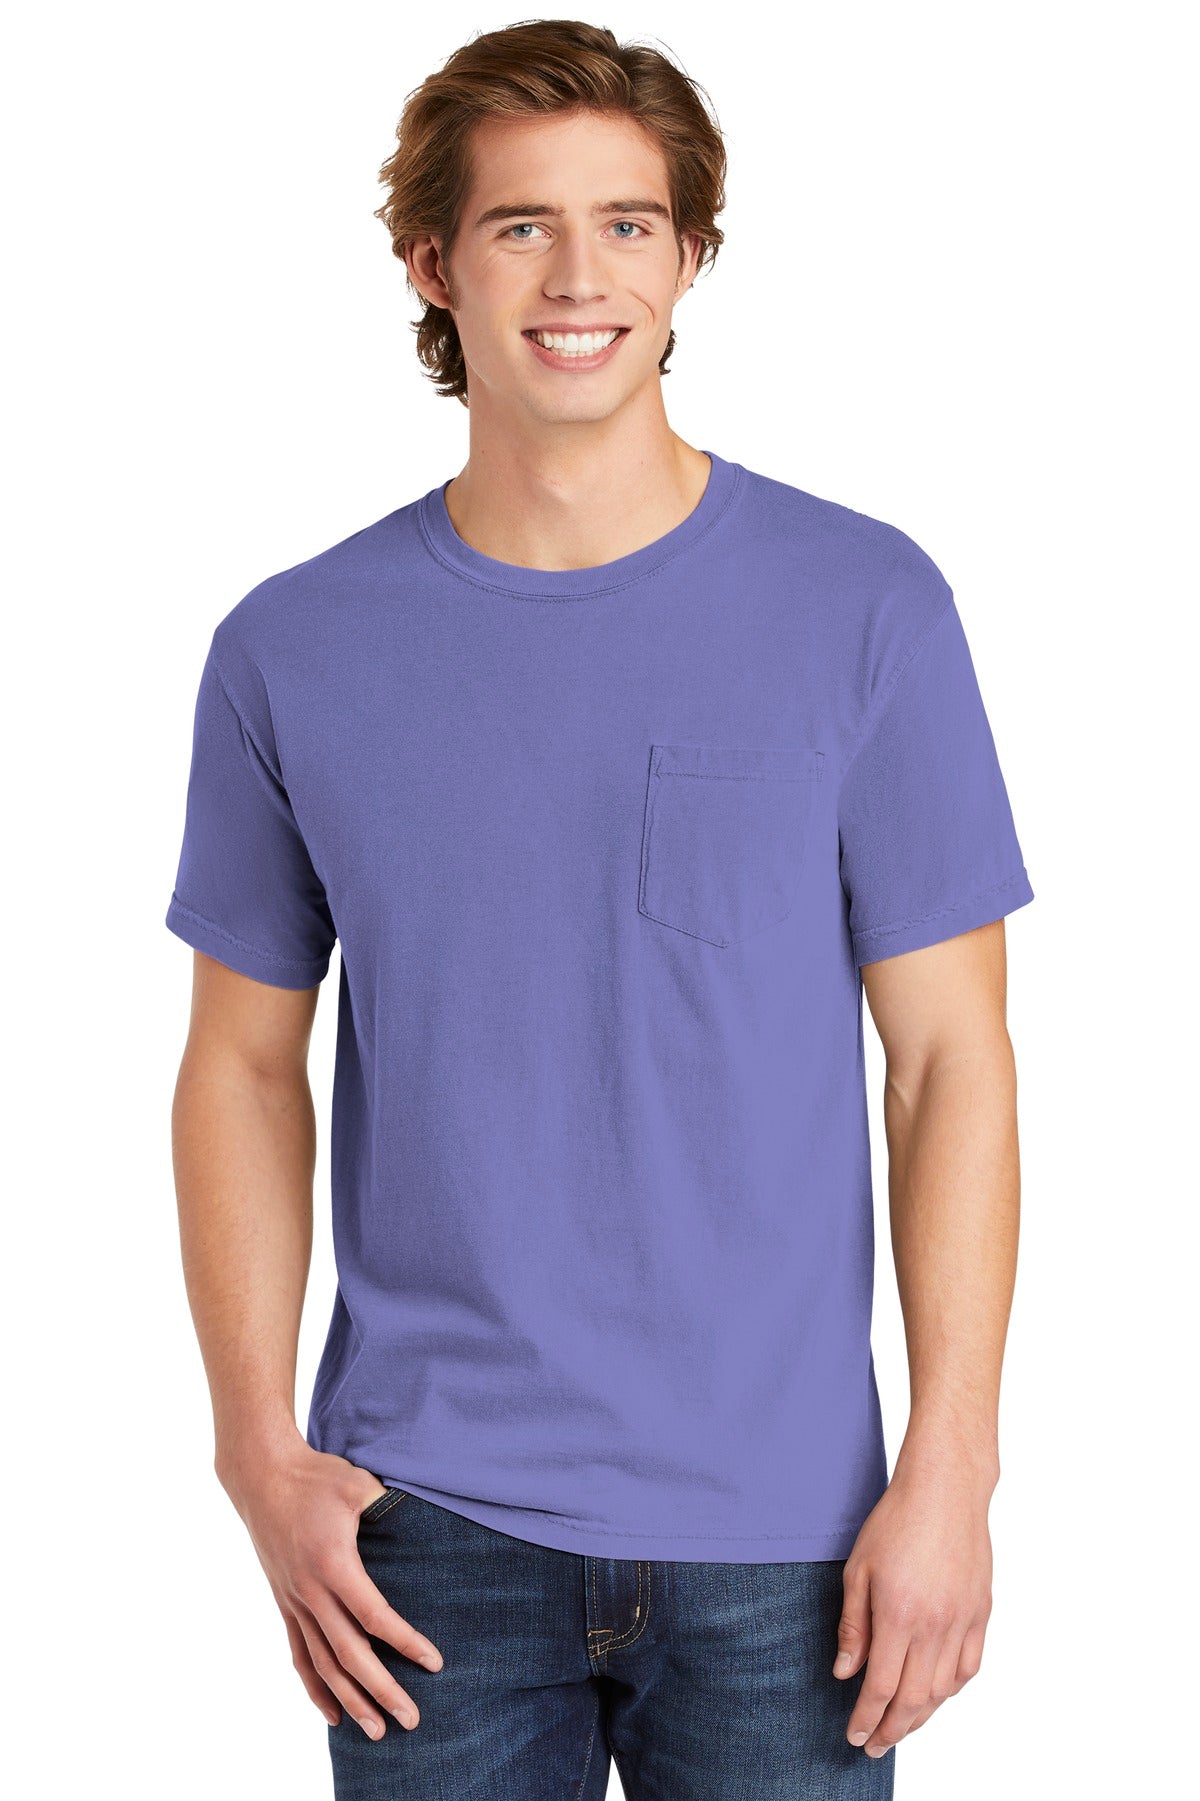 T-Shirts Violet Comfort Colors